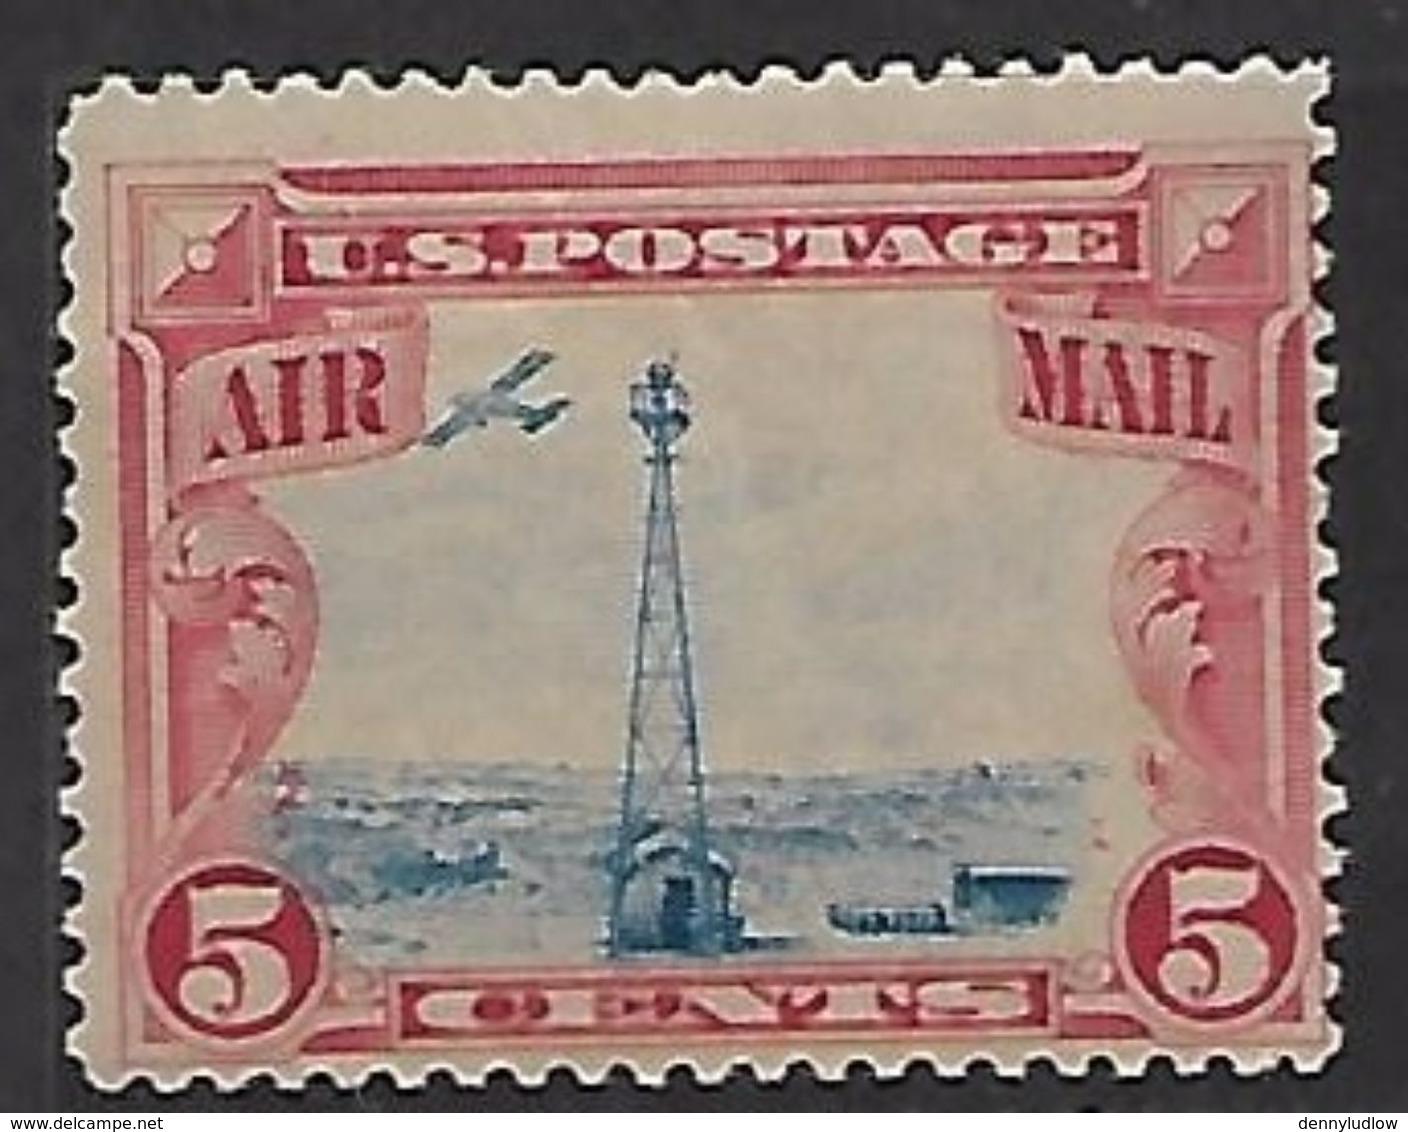 US   1928   5c  Airmail  MH*   2016 Scott Value $5 - 1b. 1918-1940 Unused